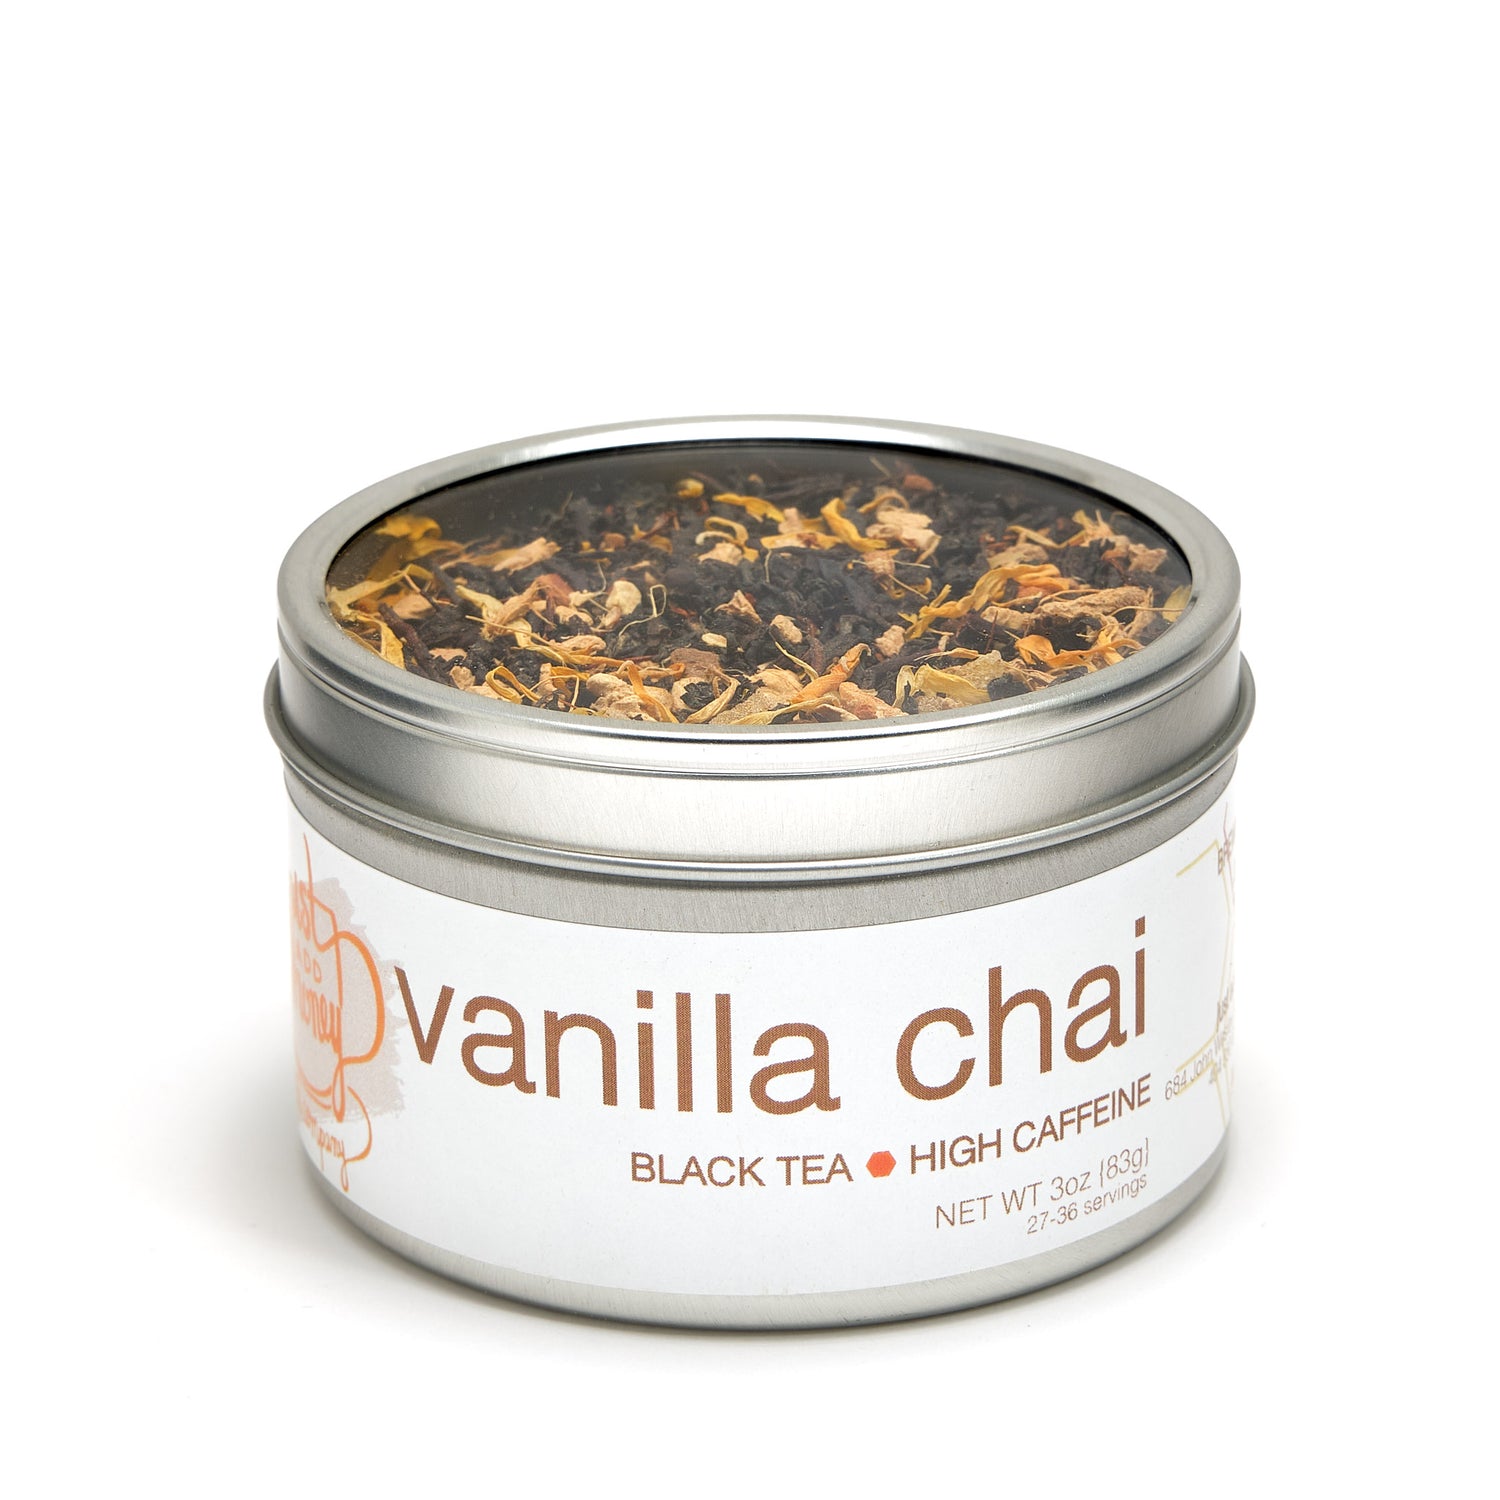 Vanilla Chai Tea